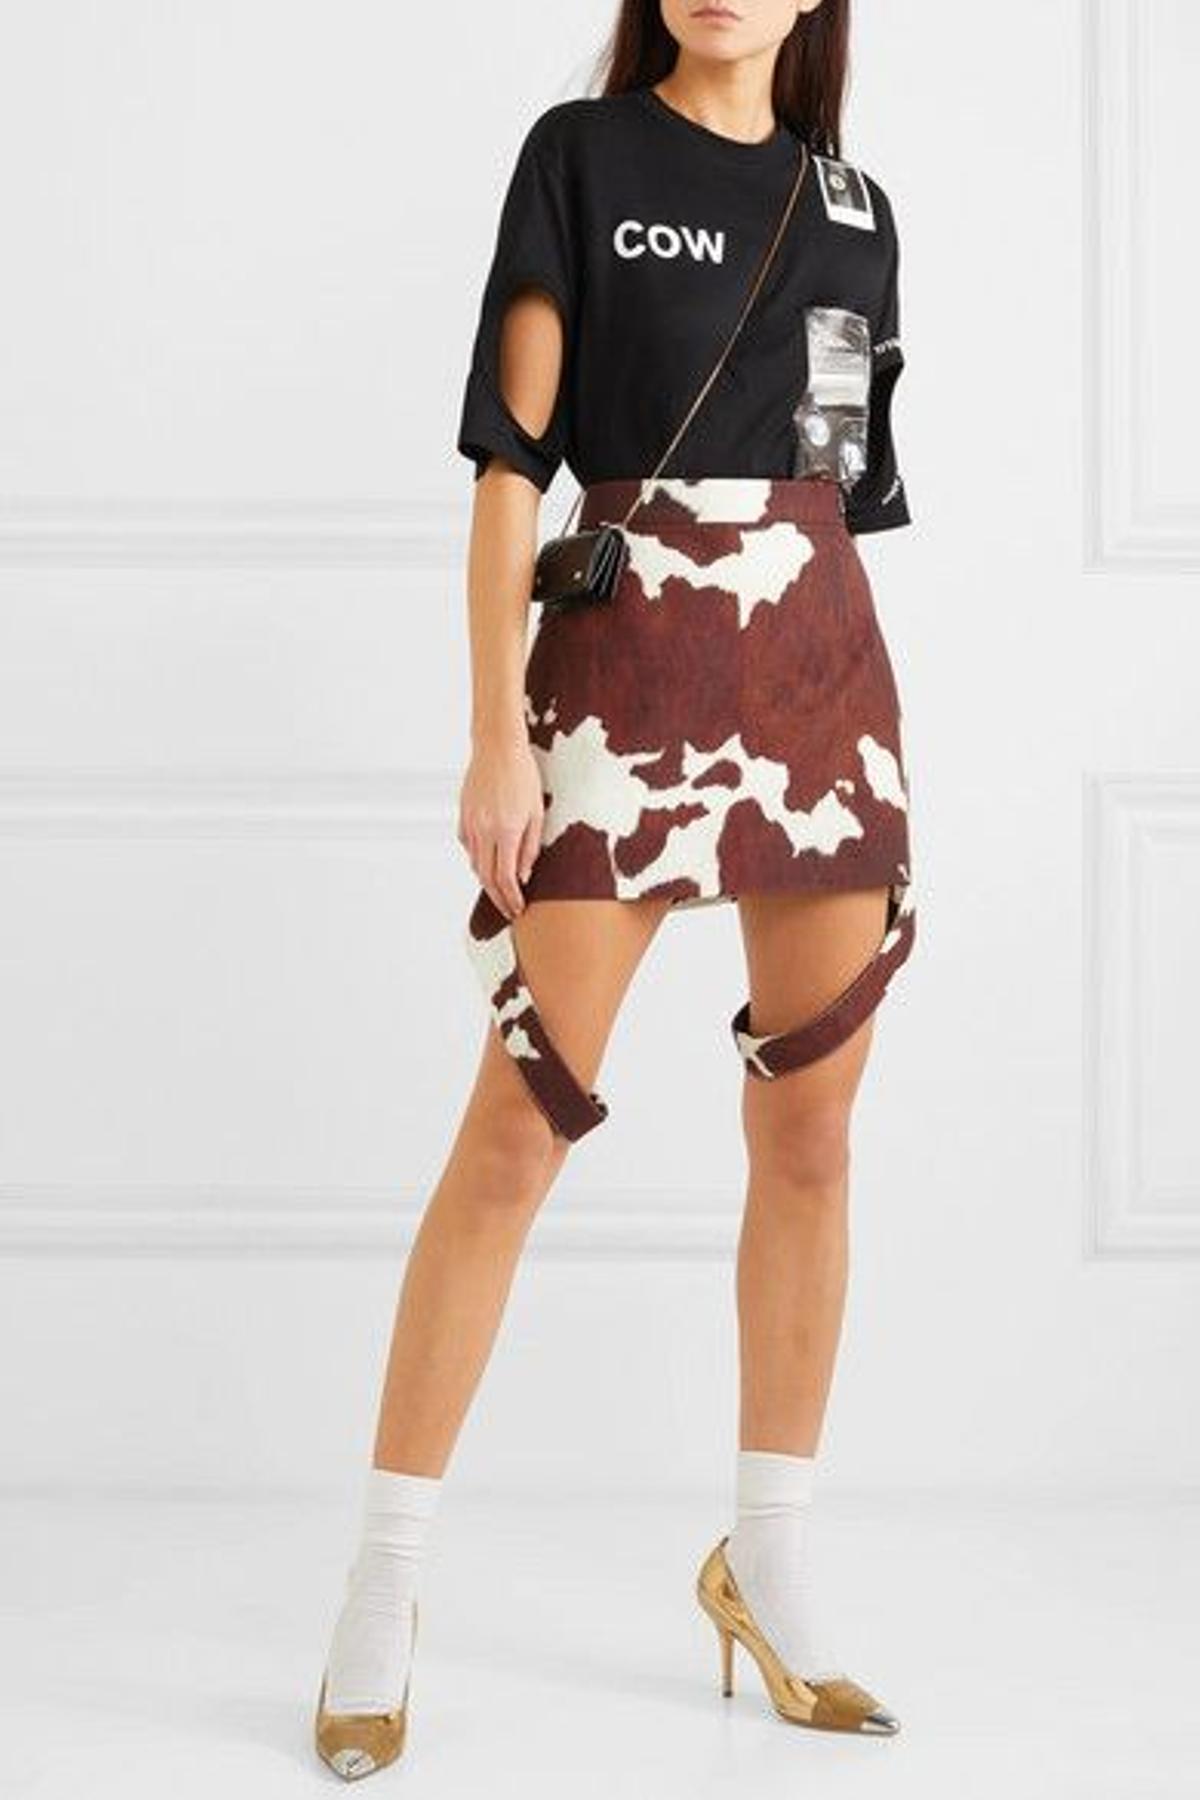 Minifalda marrón con estampado de vaca de Burberry a la venta en Net a Porter